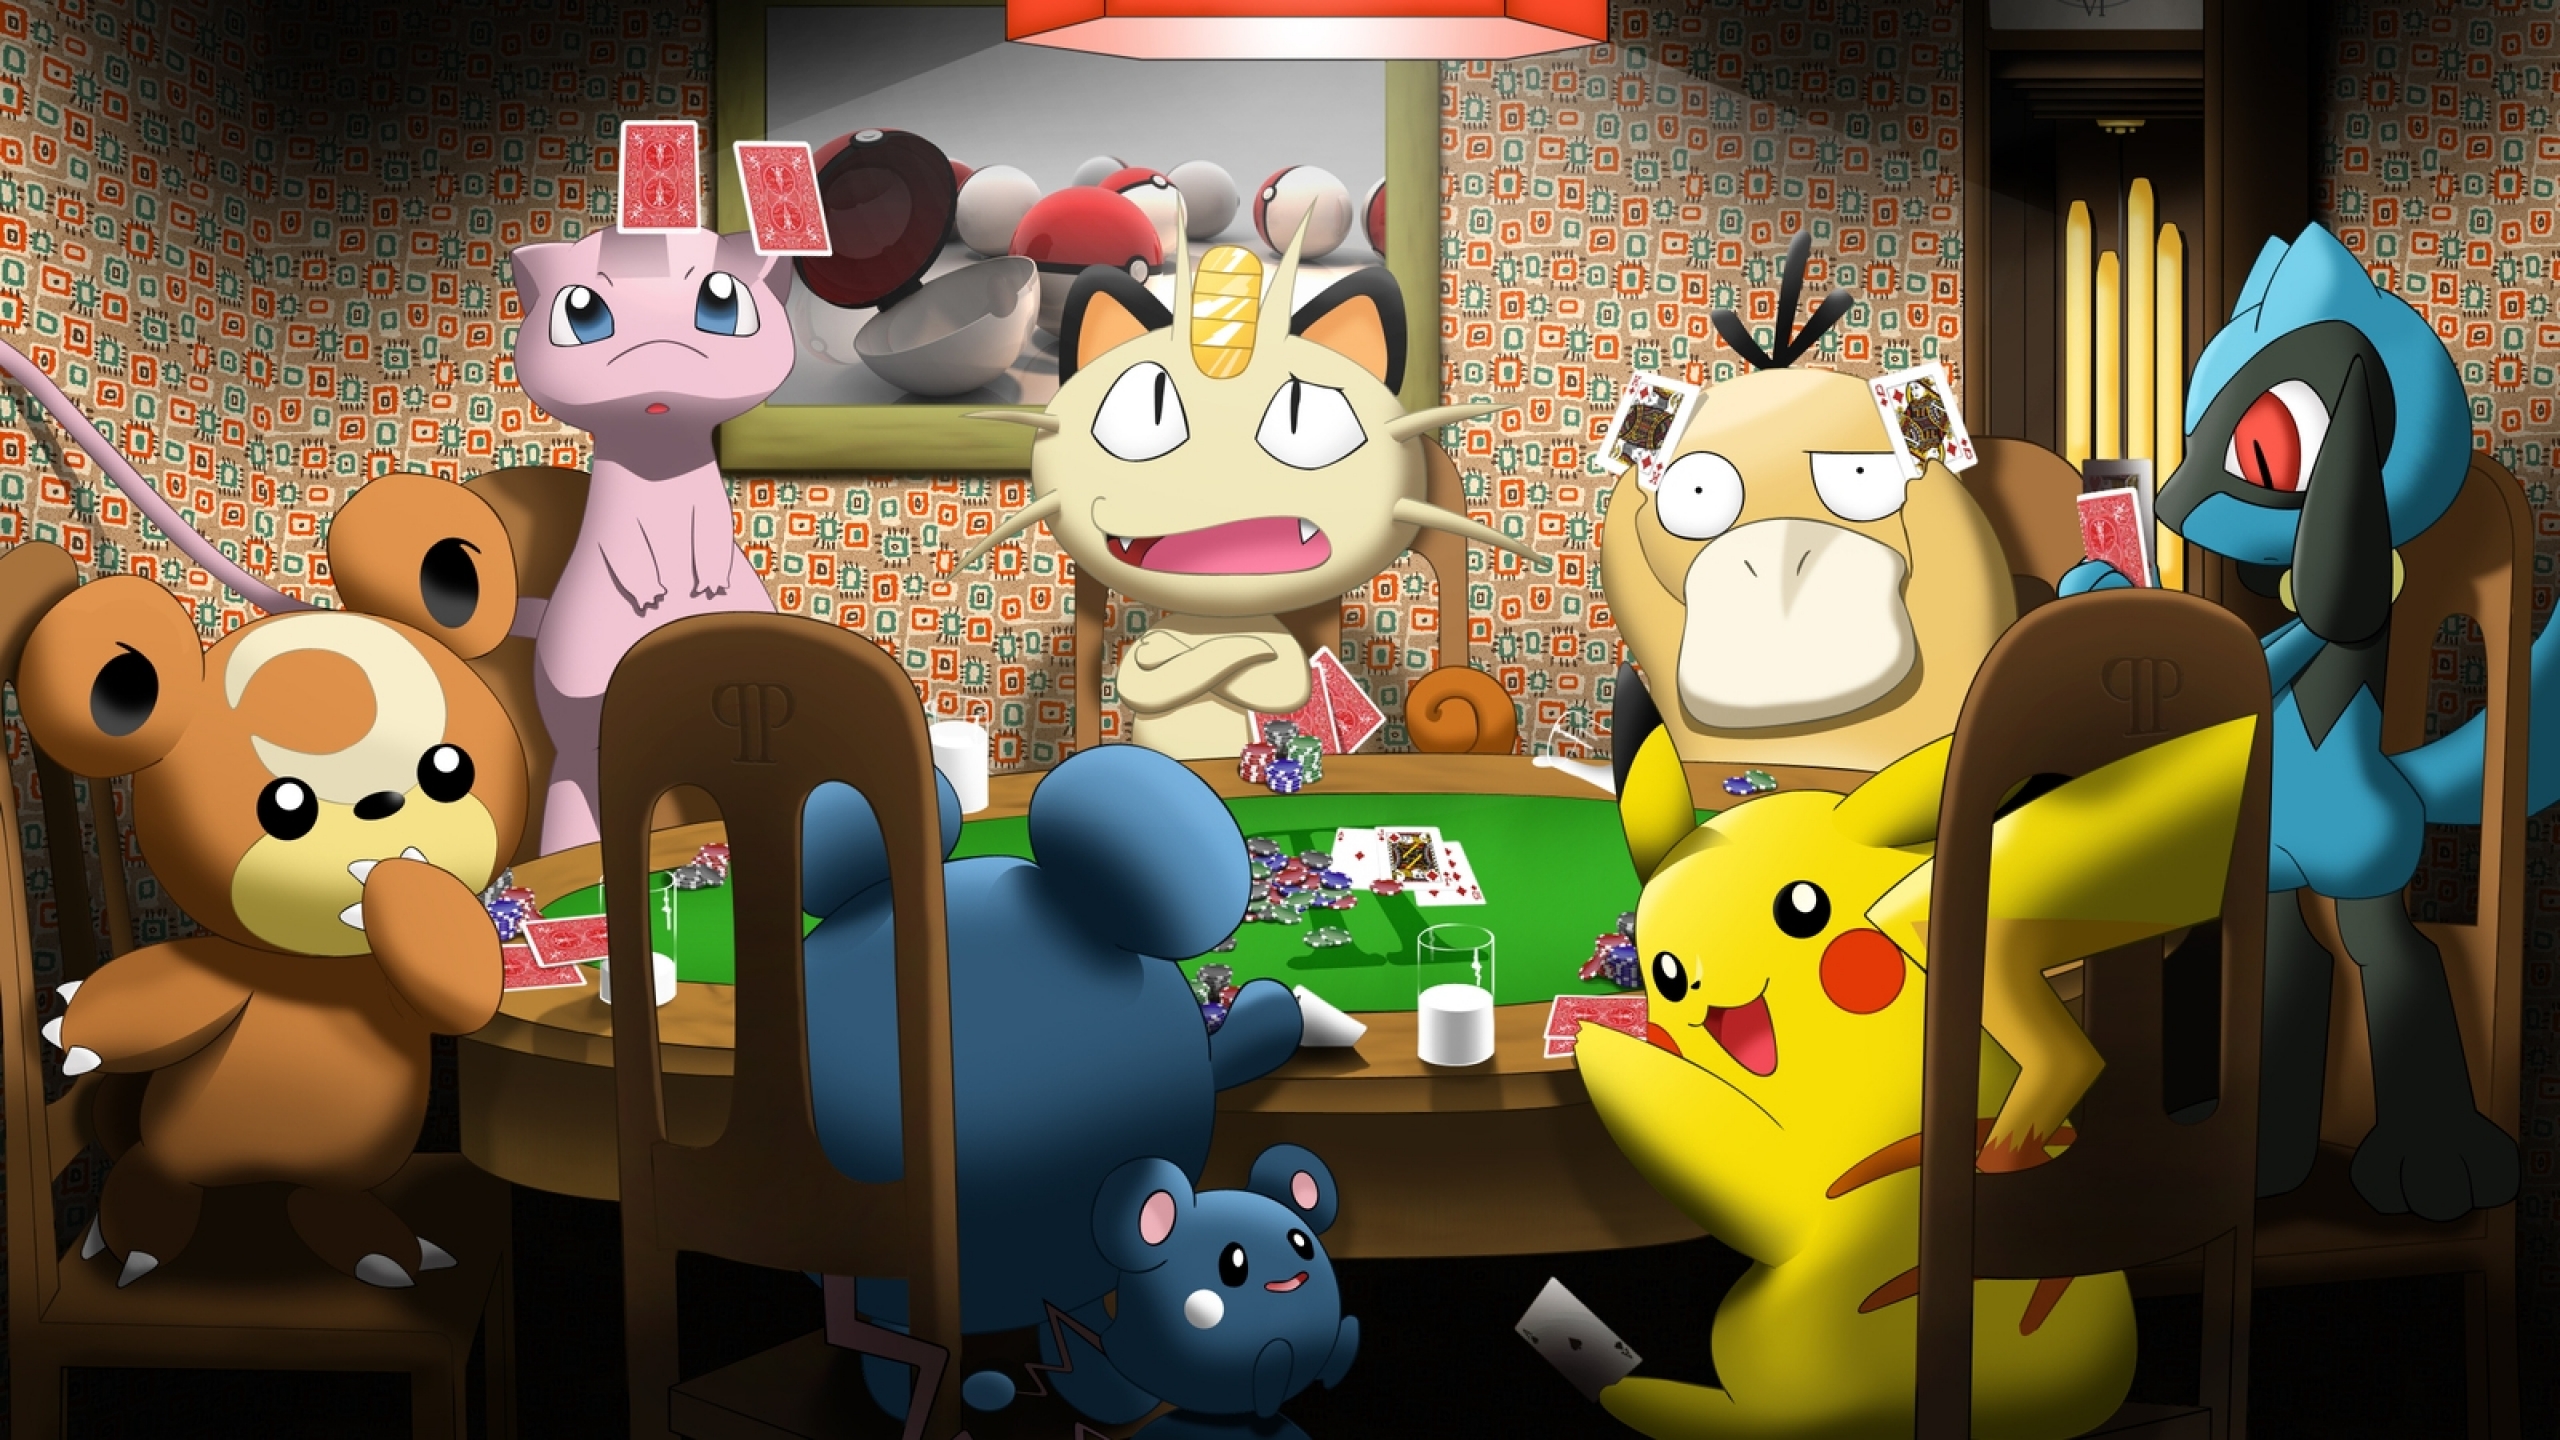 Wallpaper Pokemon Pikachu Poker Psyduck